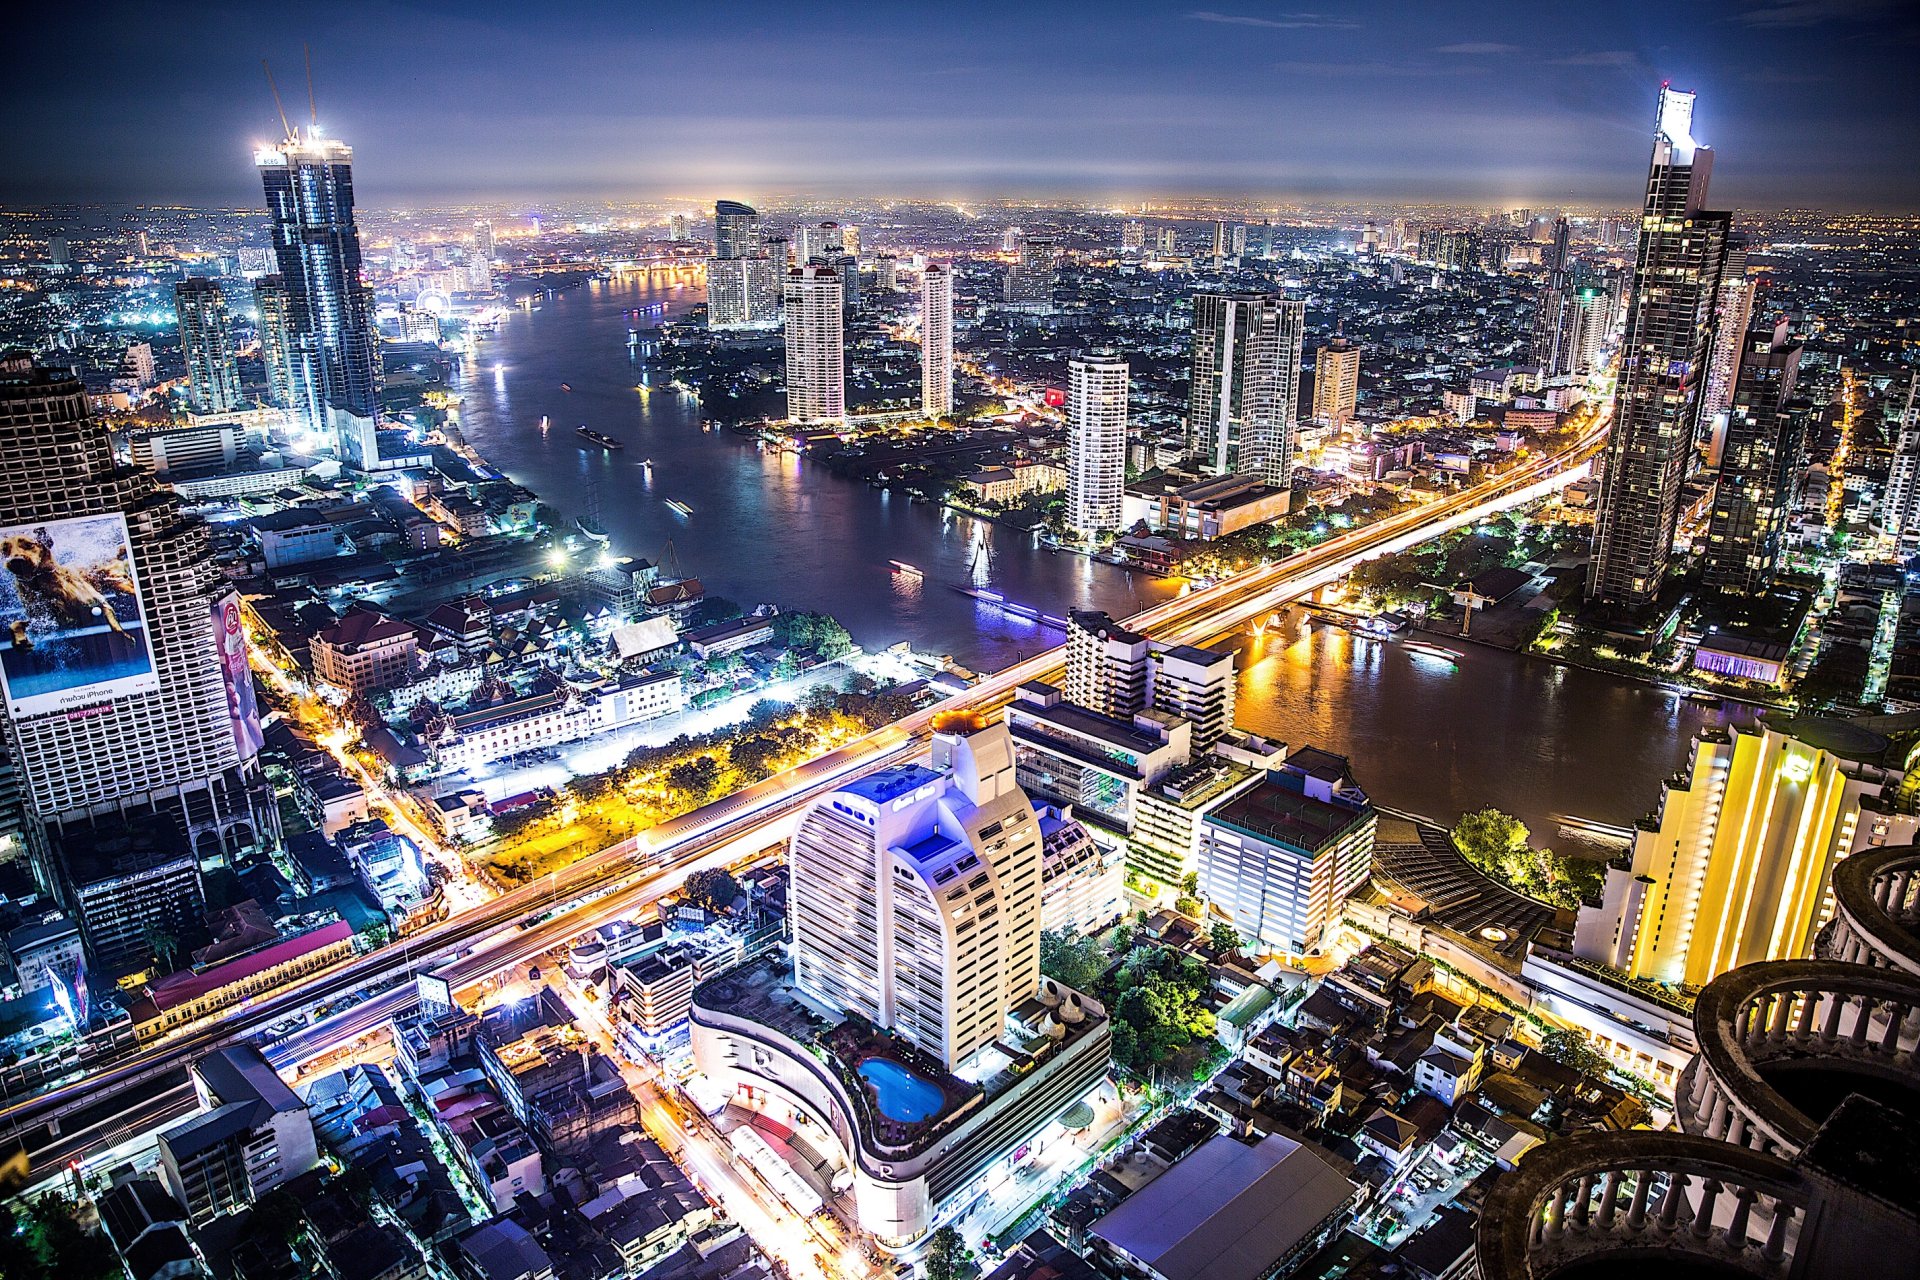 blick auf die metropole bangkok bei nacht mit beleuchteten hochhäusern und schillernden straßenzügen durchquert vom großen fluß